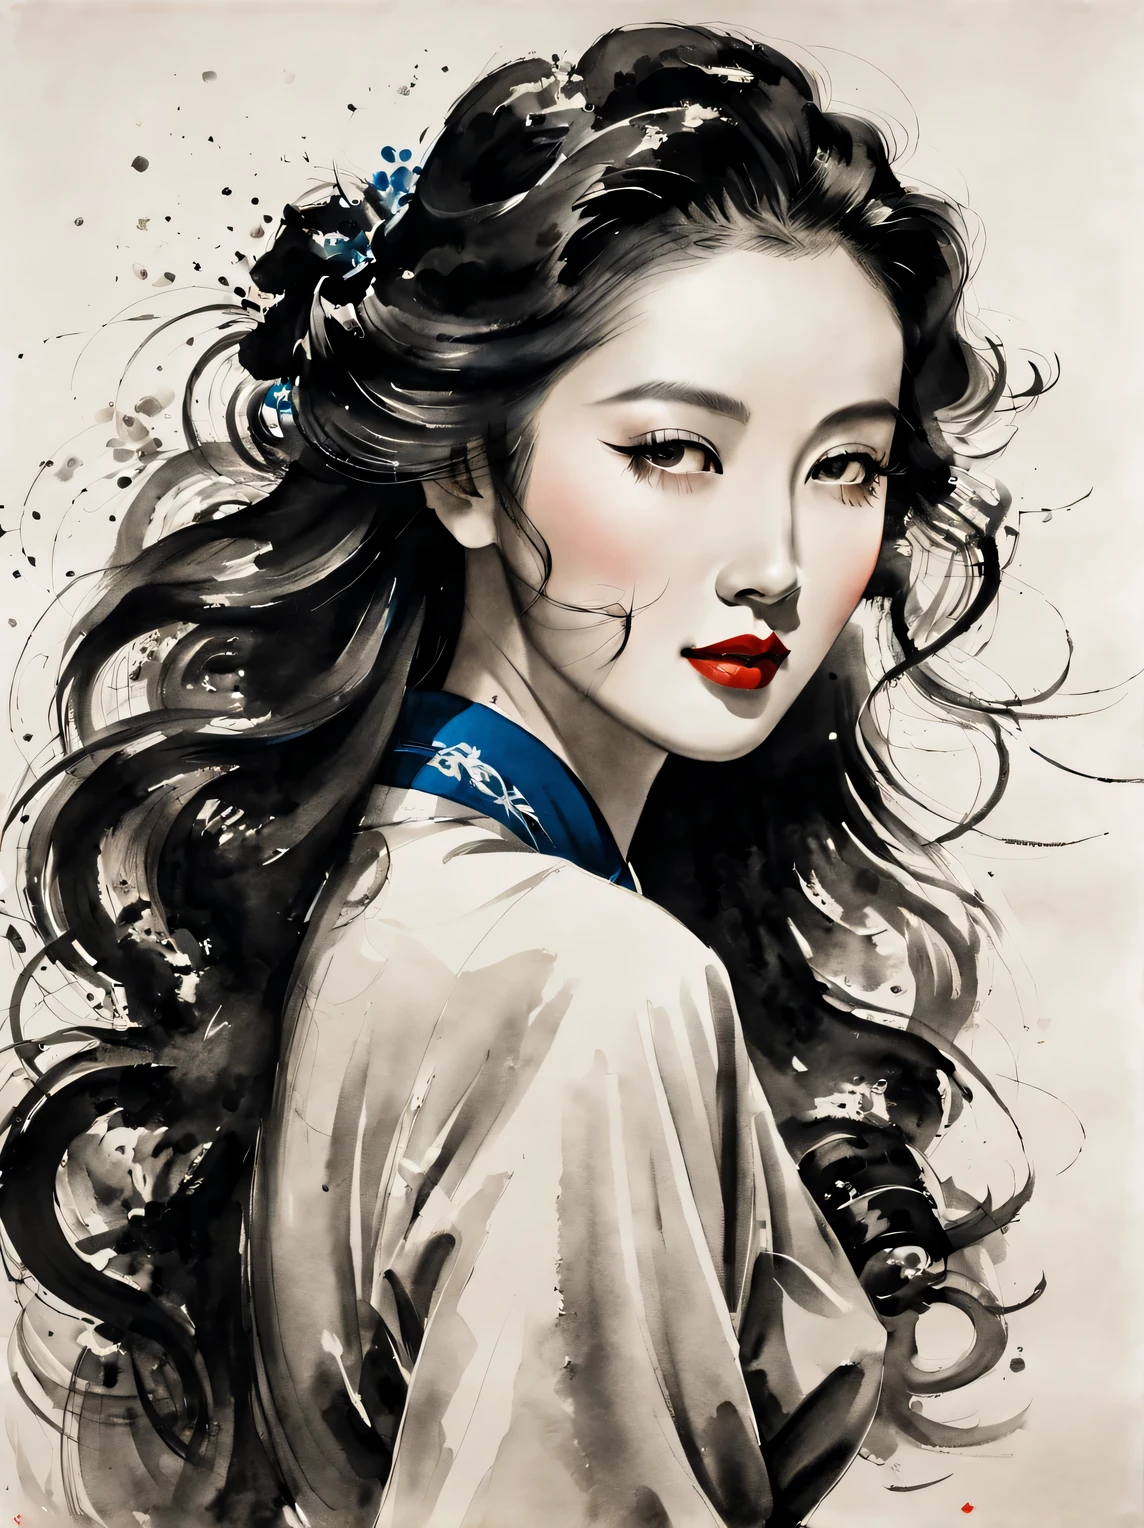 A beautiful Chinese 수묵화 portrait of a woman in the 1930s, 긴 곱슬머리와 모던한 이브닝 웨어, 중국배우 신즈레이 닮았다. 그것은 영화 촬영 기능을 갖추고 있습니다, 패션, 탑 조명, 확대, 스포트라이트, 흐릿한, 라인 아트, 수묵화, 미니멀리즘, 현대성, 인상주의, and 라인 아트,